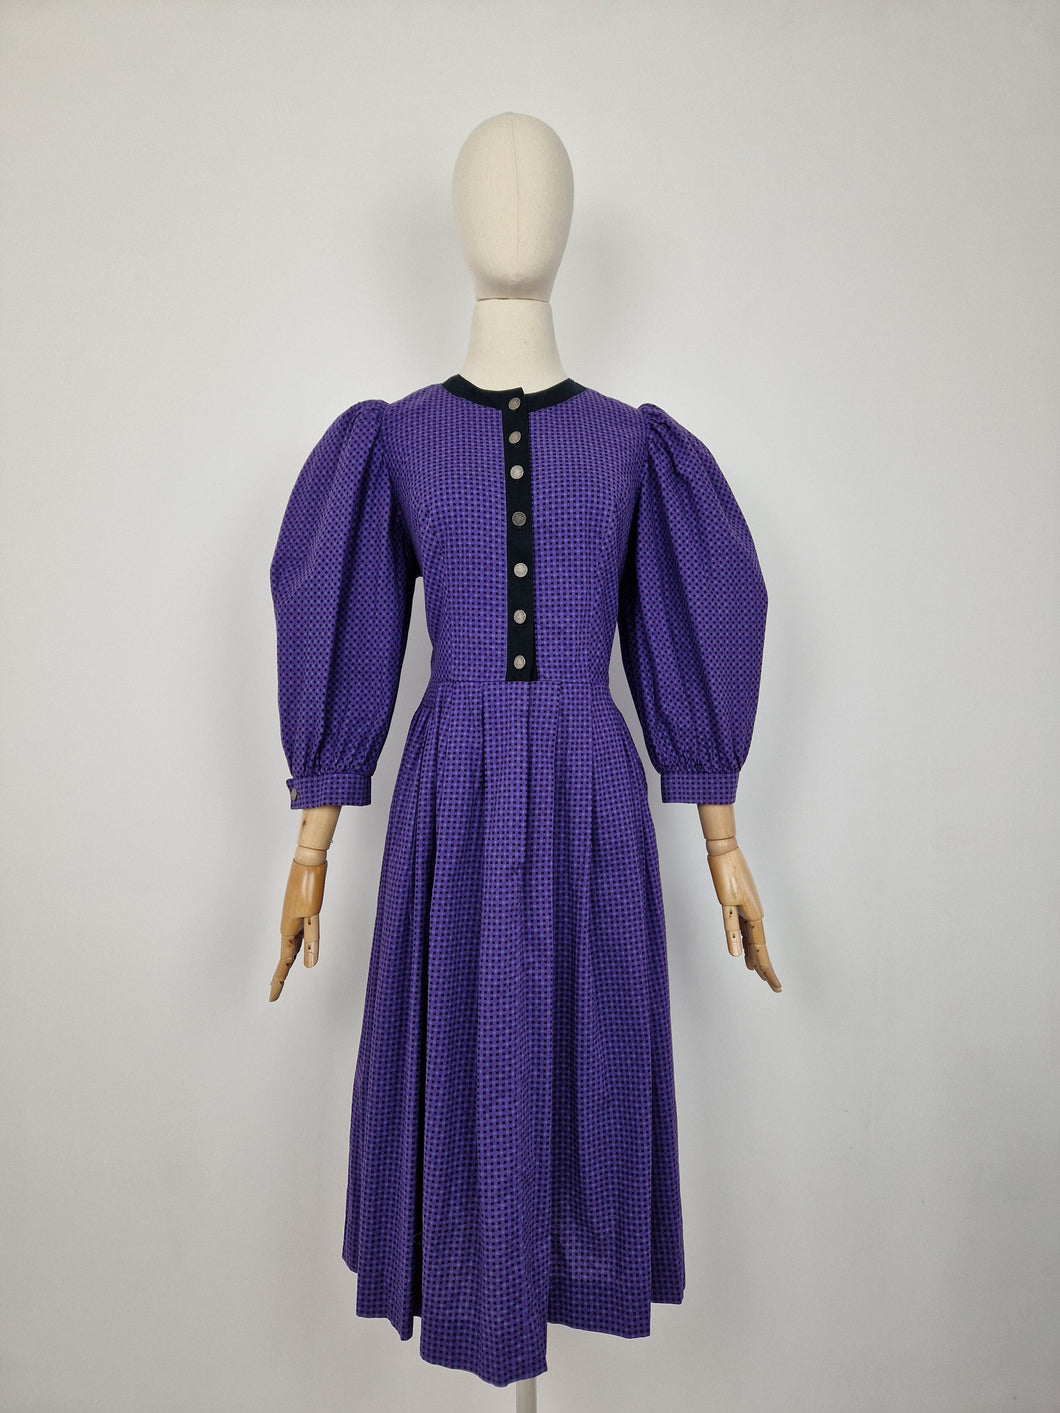 Vintage Austrian purple cotton dress